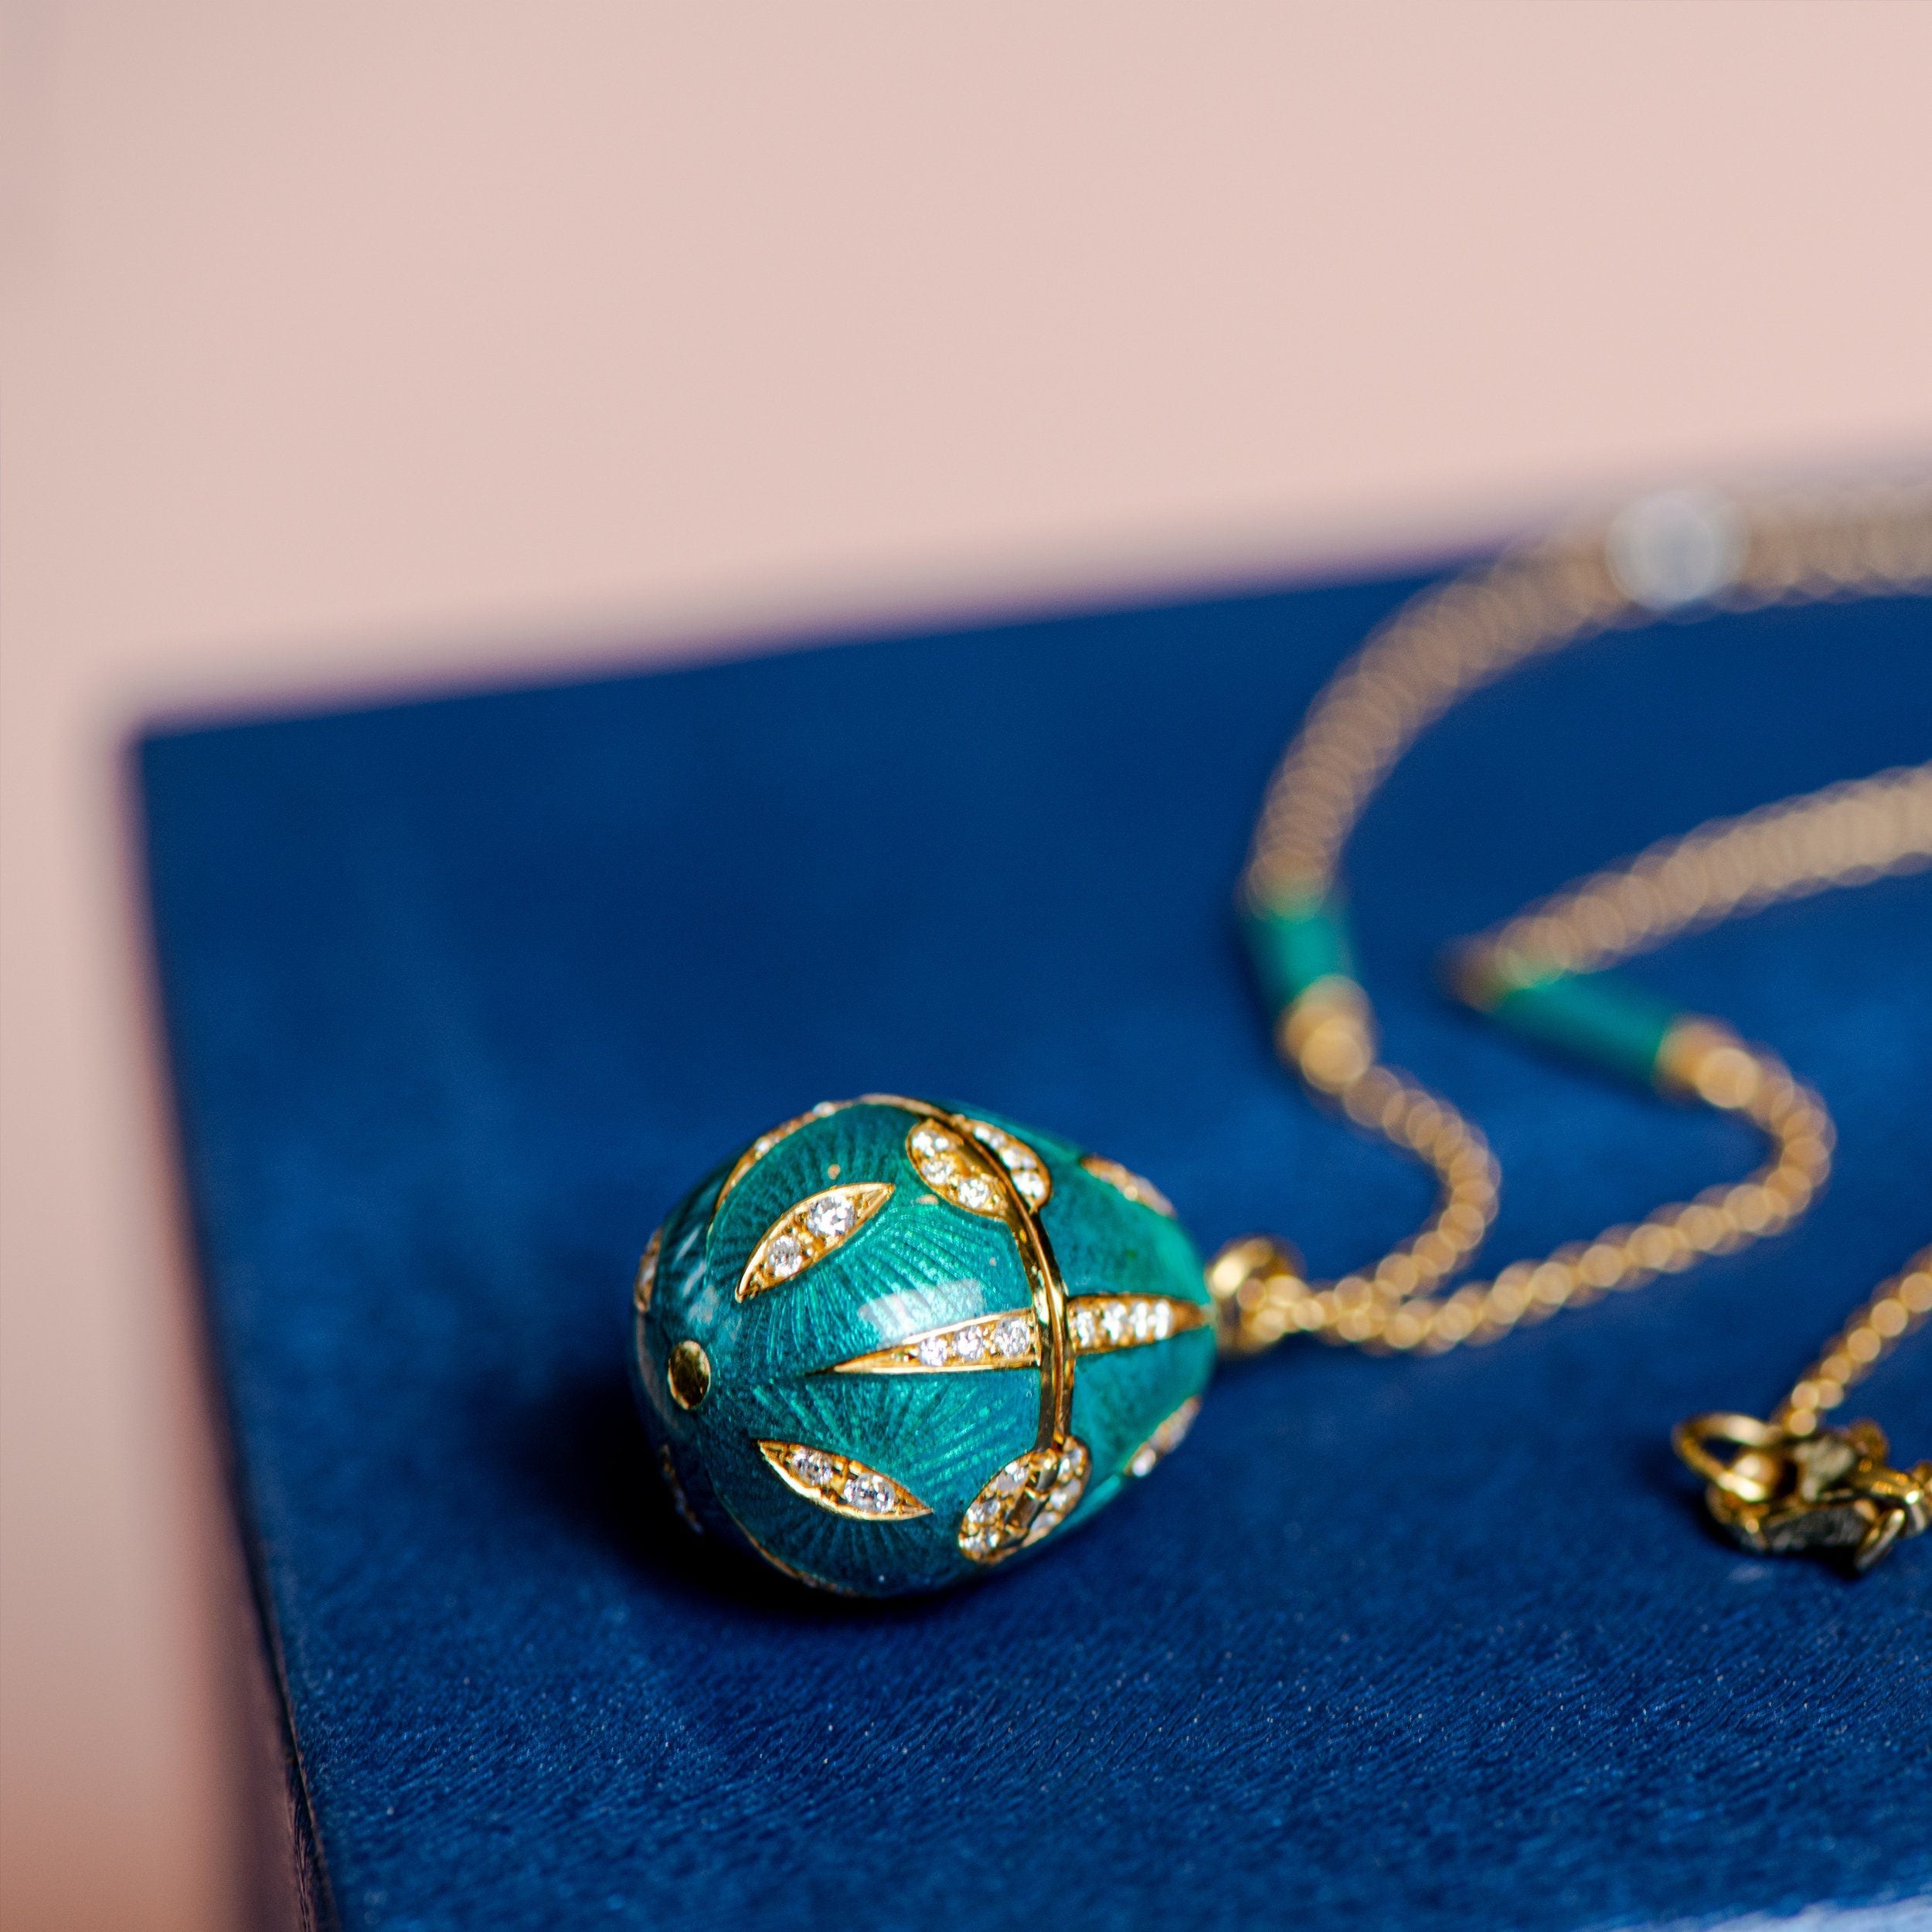 Turquoise Enamel Locket Necklace